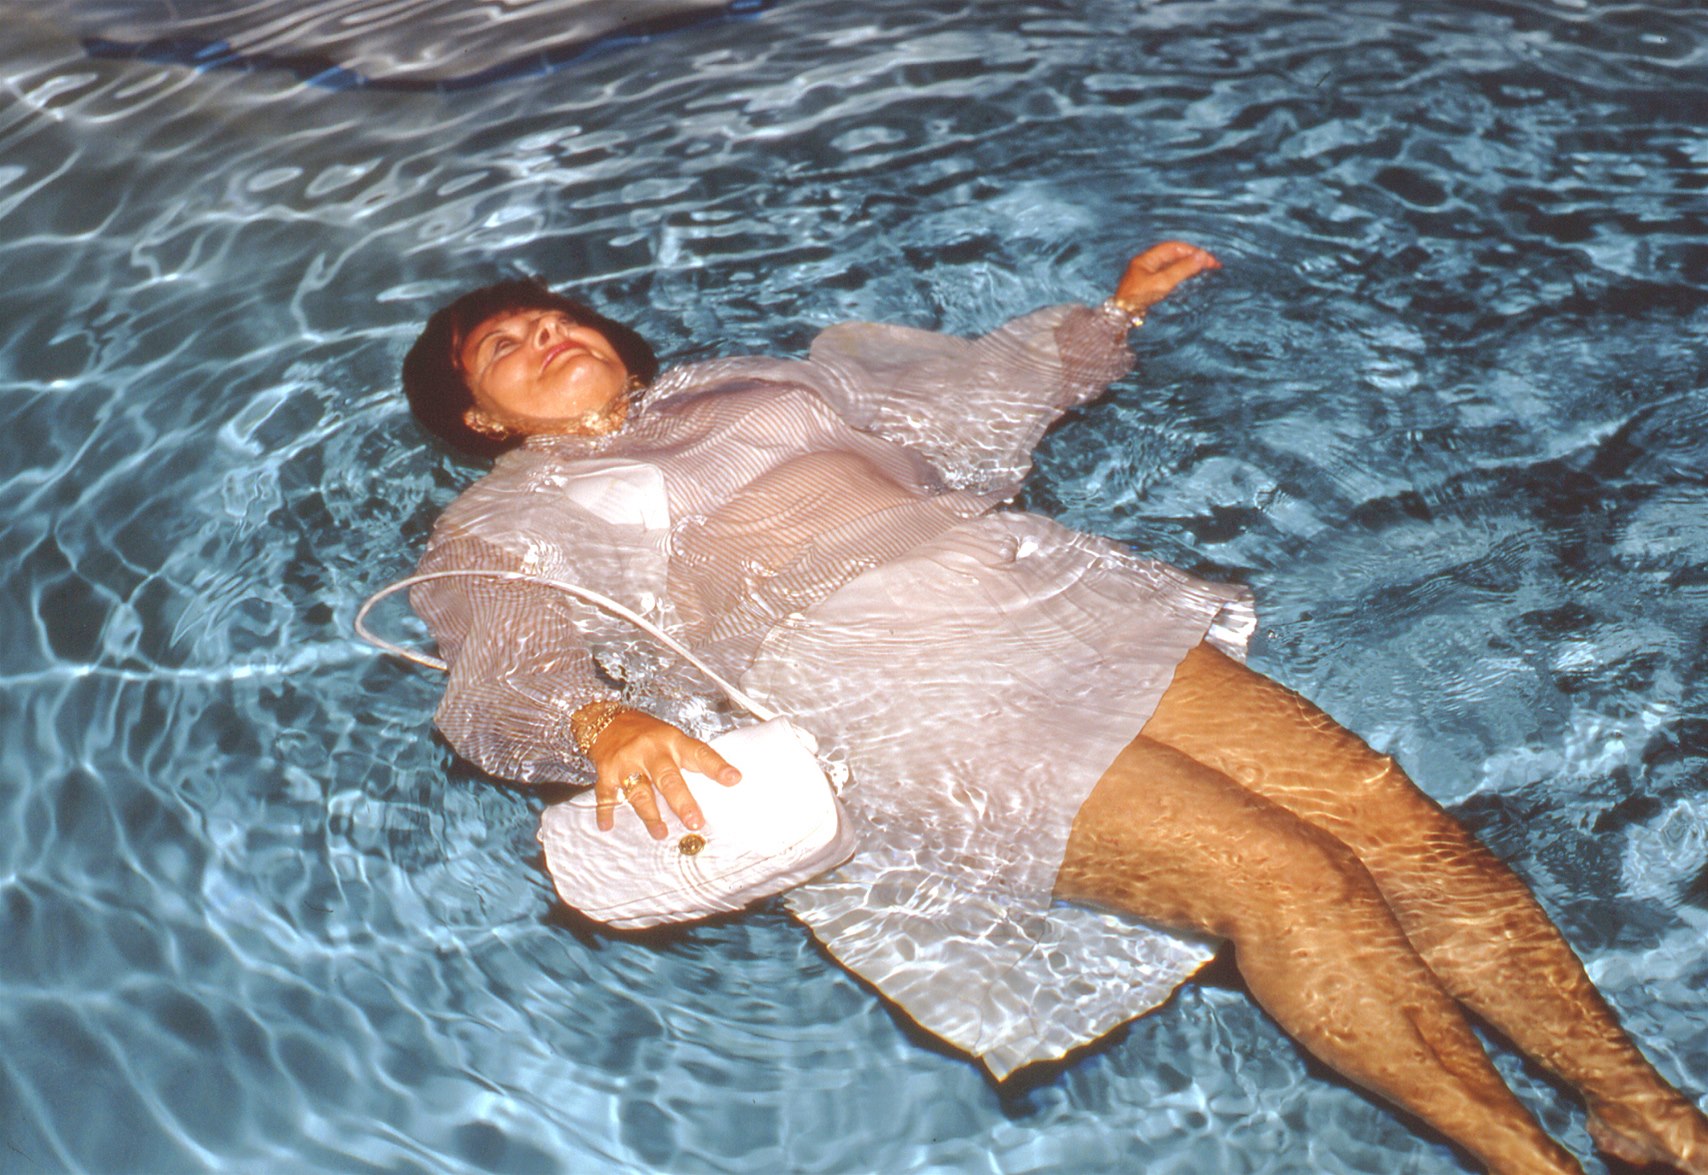 Жена купается ванне. Купание в одежде в бассейне. Толстая женщина в воде. Купаться в одежде. Купаться в воде.